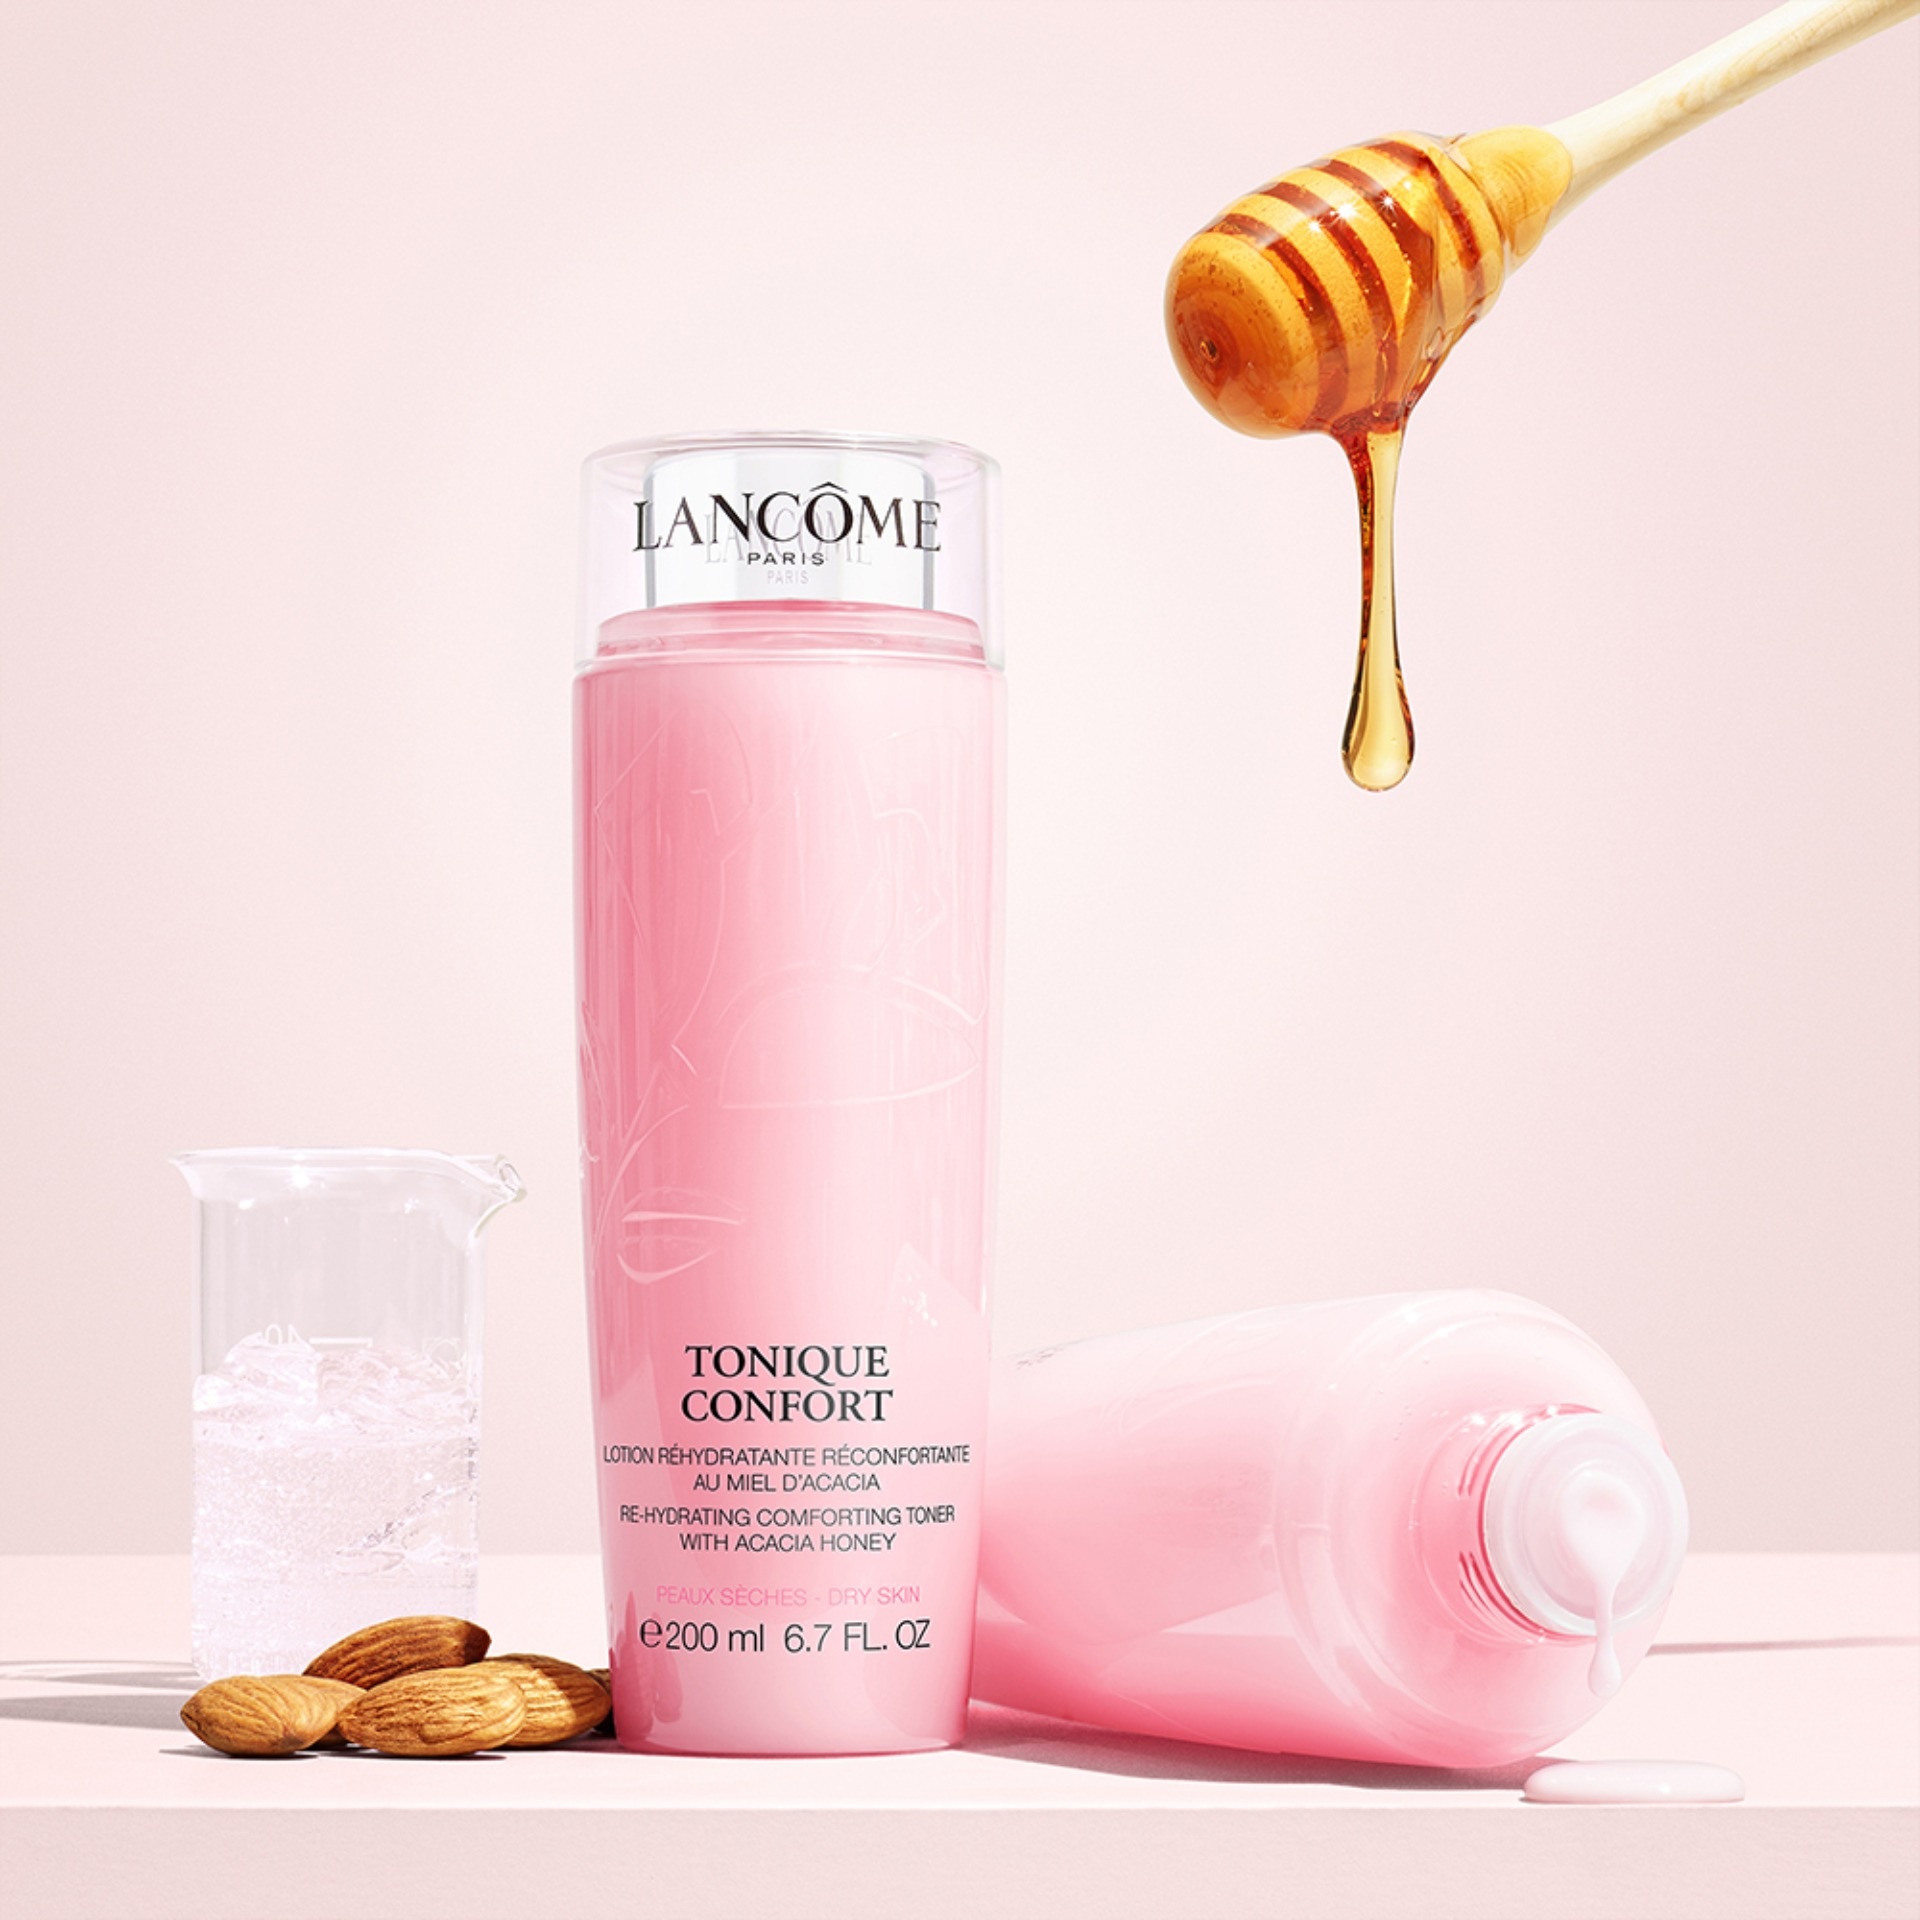 Nước hoa hồng dưỡng ẩm Lancome tonique Confort dành cho da khô - Hàng Pháp  Hàng Pháp Xách Tay